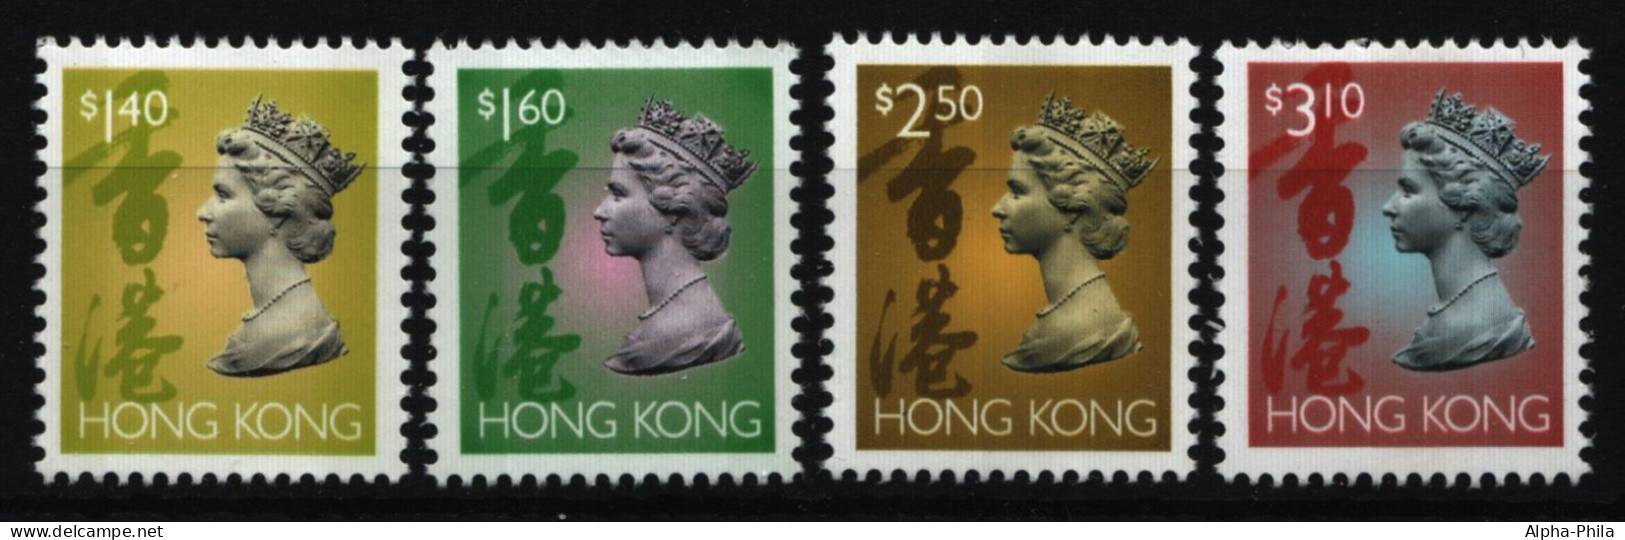 Hongkong 1996 - Mi-Nr. 771-774 I ** - MNH - Freimarken - Queen Elizabeth II - Nuevos